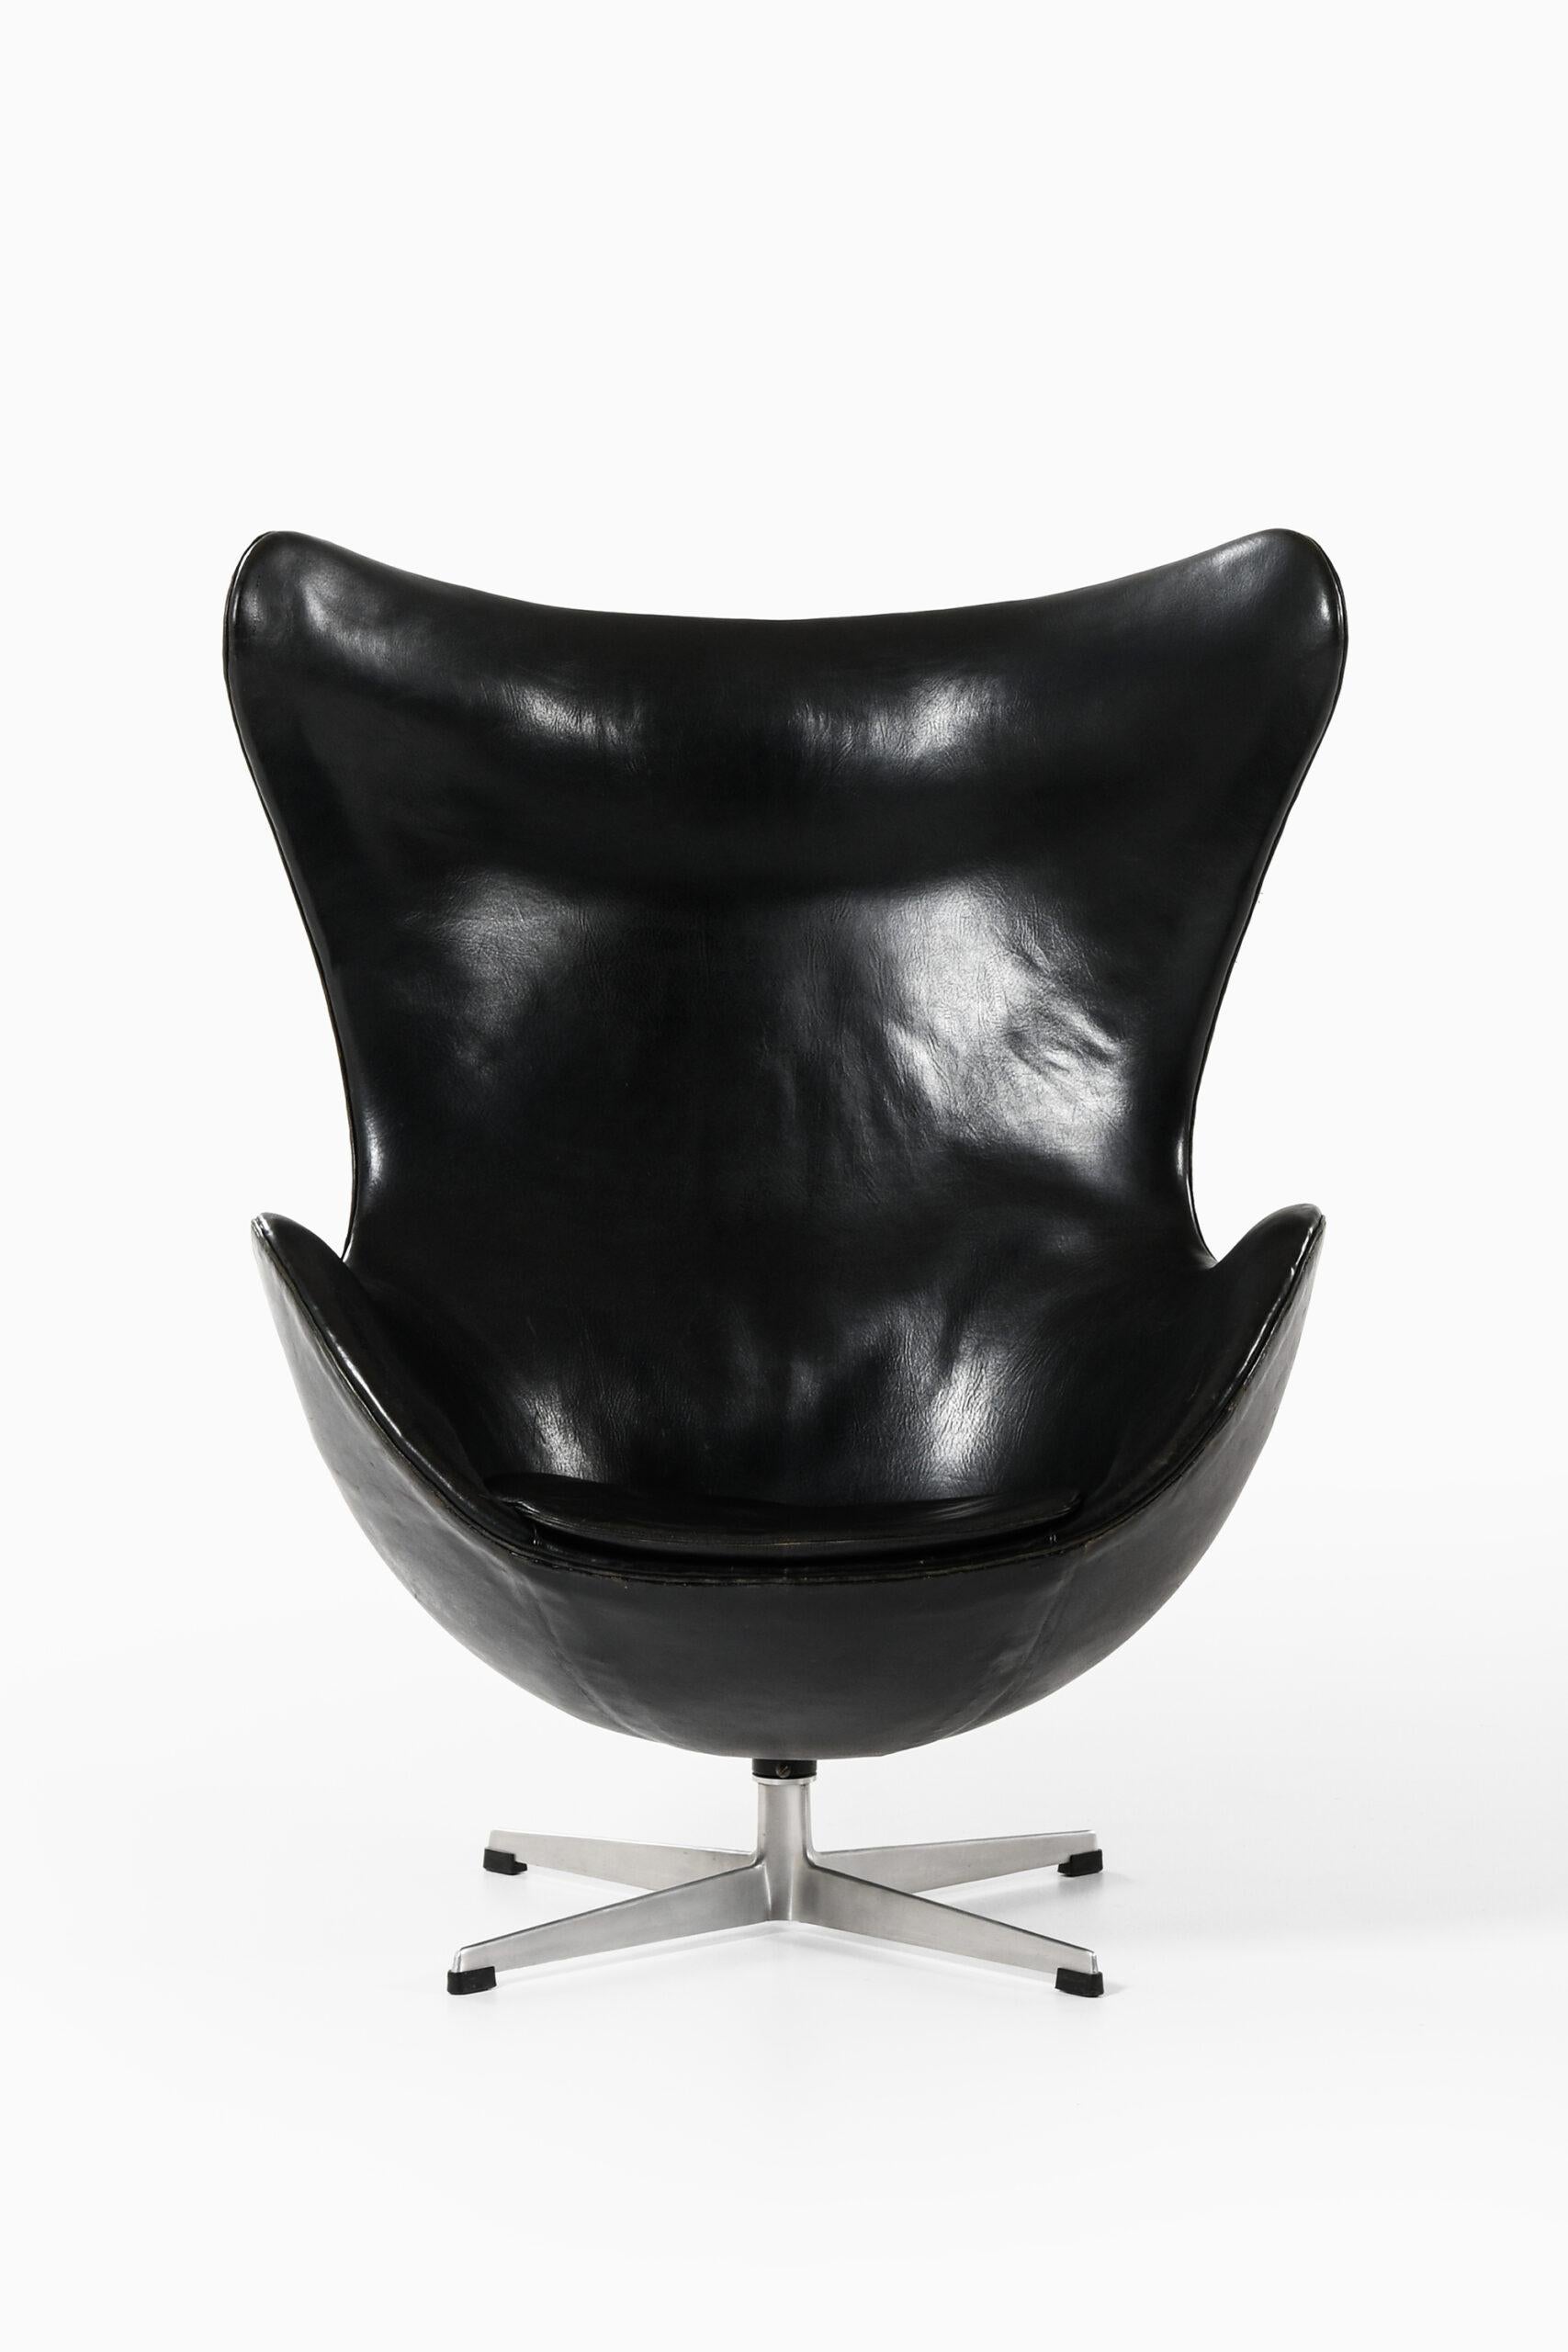 Seltener Sessel Modell 3316 / Egg entworfen von Arne Jacobsen. Produziert von Fritz Hansen in Dänemark.